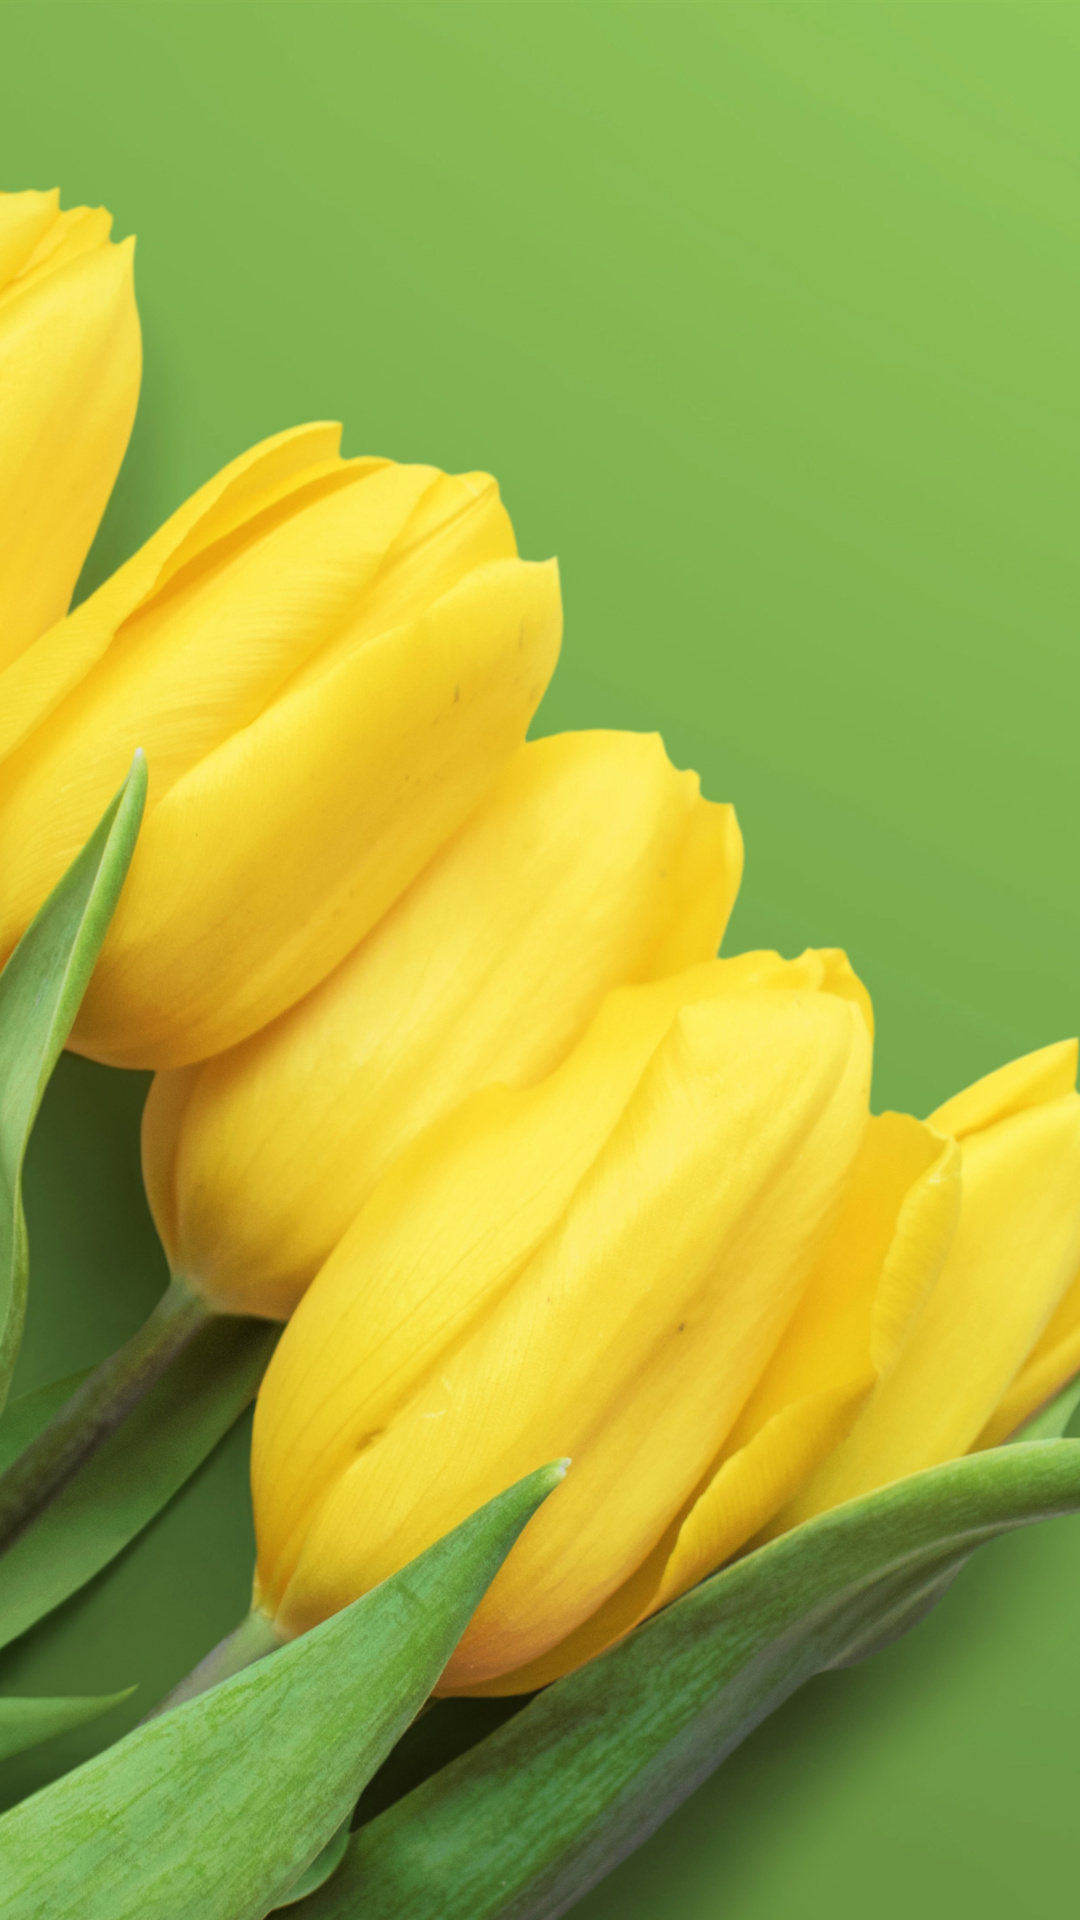 Yellow Tulips wallpaper 1080x1920